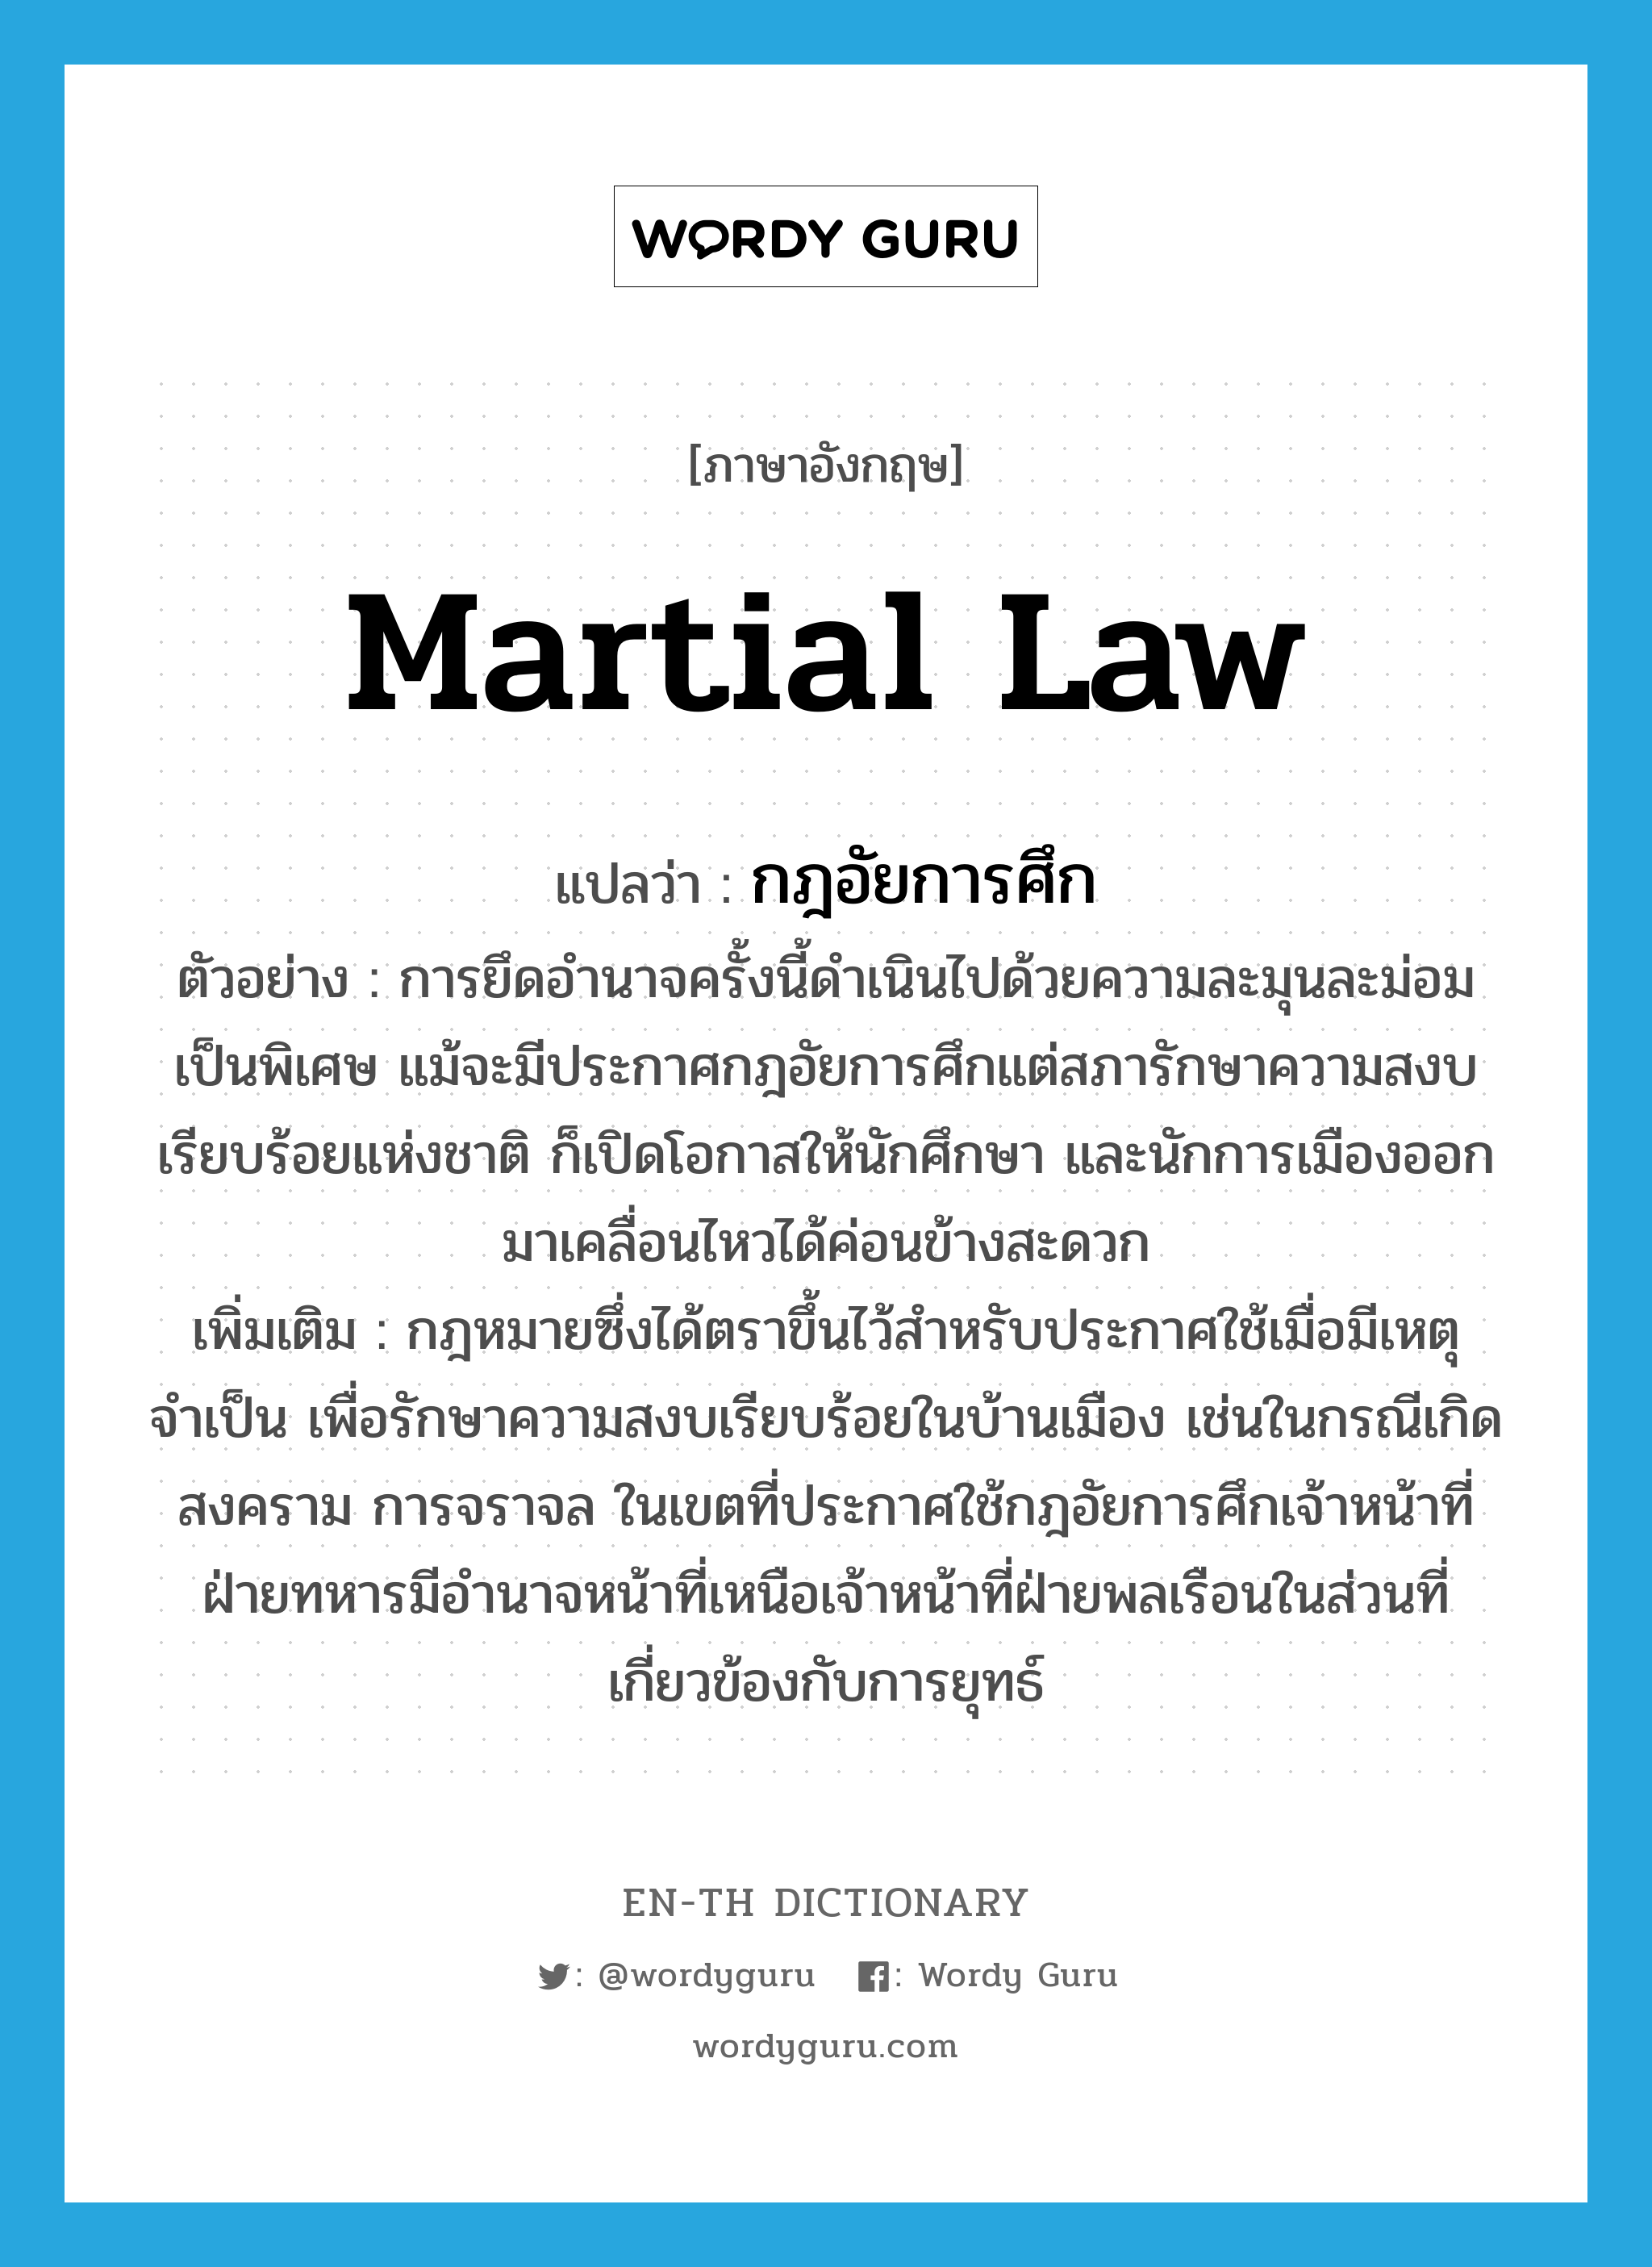 martial law แปลว่า?, คำศัพท์ภาษาอังกฤษ martial law แปลว่า กฎอัยการศึก ประเภท N ตัวอย่าง การยึดอำนาจครั้งนี้ดำเนินไปด้วยความละมุนละม่อมเป็นพิเศษ แม้จะมีประกาศกฎอัยการศึกแต่สภารักษาความสงบเรียบร้อยแห่งชาติ ก็เปิดโอกาสให้นักศึกษา และนักการเมืองออกมาเคลื่อนไหวได้ค่อนข้างสะดวก เพิ่มเติม กฎหมายซึ่งได้ตราขึ้นไว้สำหรับประกาศใช้เมื่อมีเหตุจำเป็น เพื่อรักษาความสงบเรียบร้อยในบ้านเมือง เช่นในกรณีเกิดสงคราม การจราจล ในเขตที่ประกาศใช้กฎอัยการศึกเจ้าหน้าที่ฝ่ายทหารมีอำนาจหน้าที่เหนือเจ้าหน้าที่ฝ่ายพลเรือนในส่วนที่เกี่ยวข้องกับการยุทธ์ หมวด N